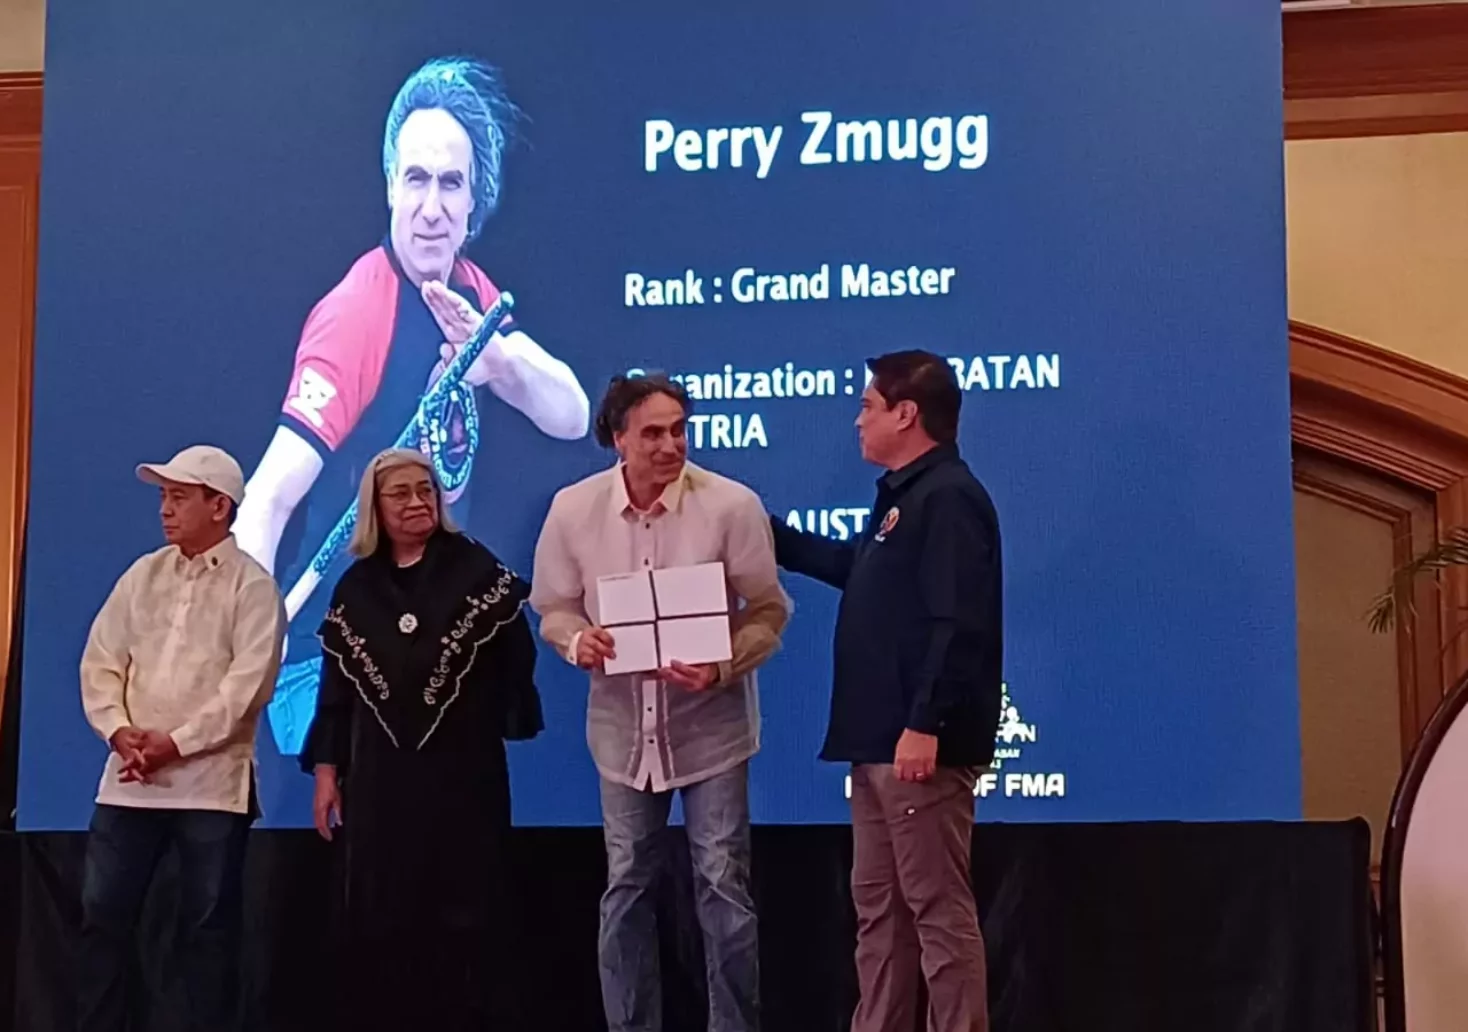 Grazer Kampfkunstmeister Perry Zmugg als Hero of FMA ausgezeichnet